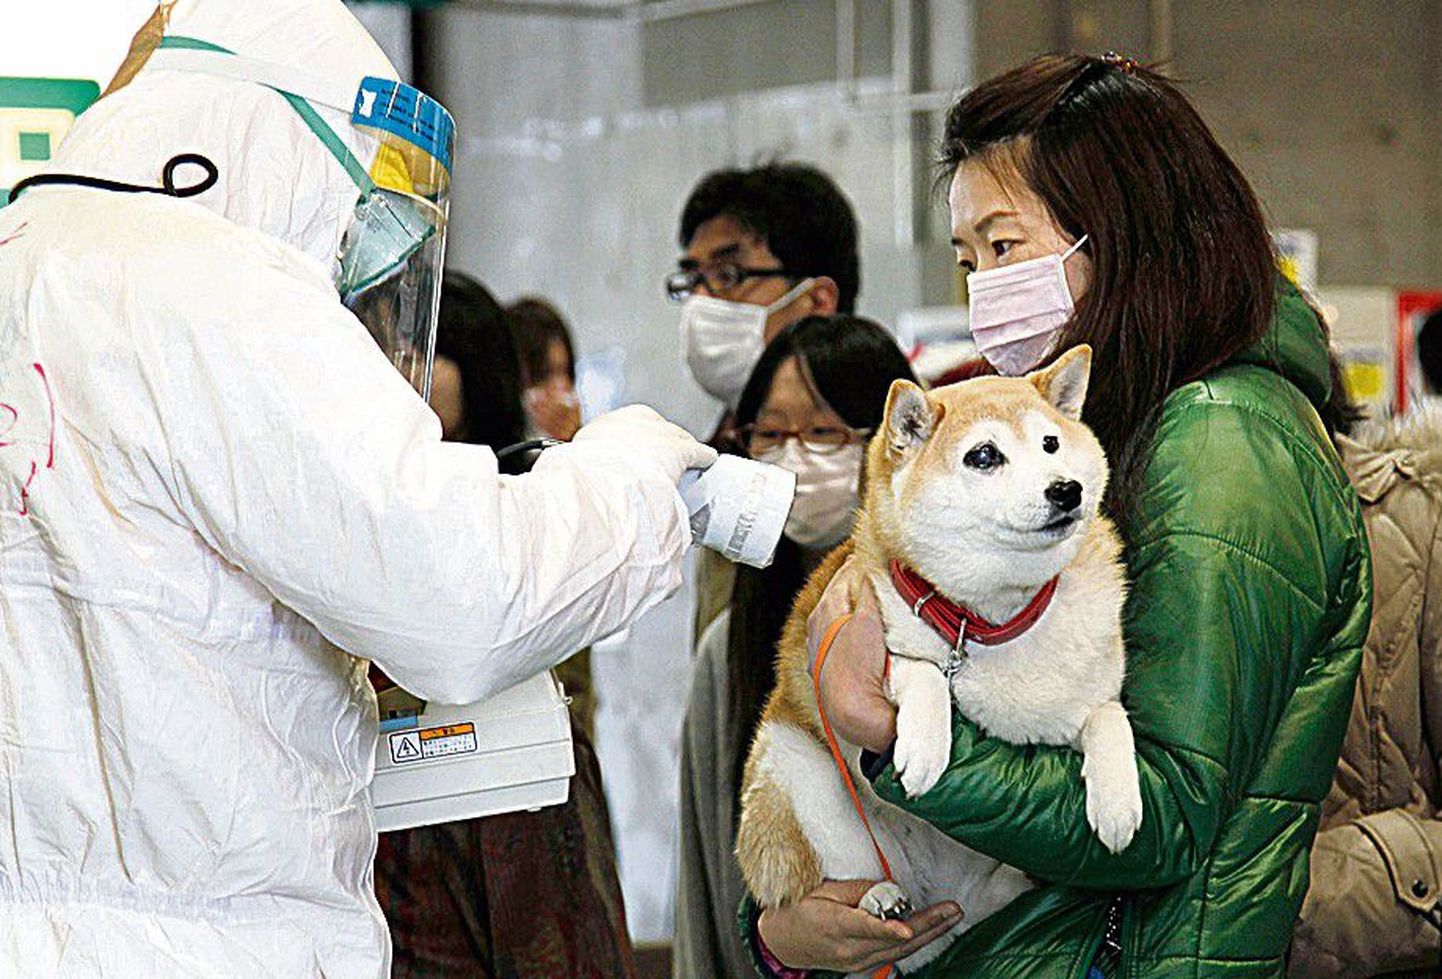 Mis koerakesel mureks? Asjatundja kontrollib, ega jaapanlanna lemmikloom ole karvadega liiga palju ohtlikku kiirgust kogunud.